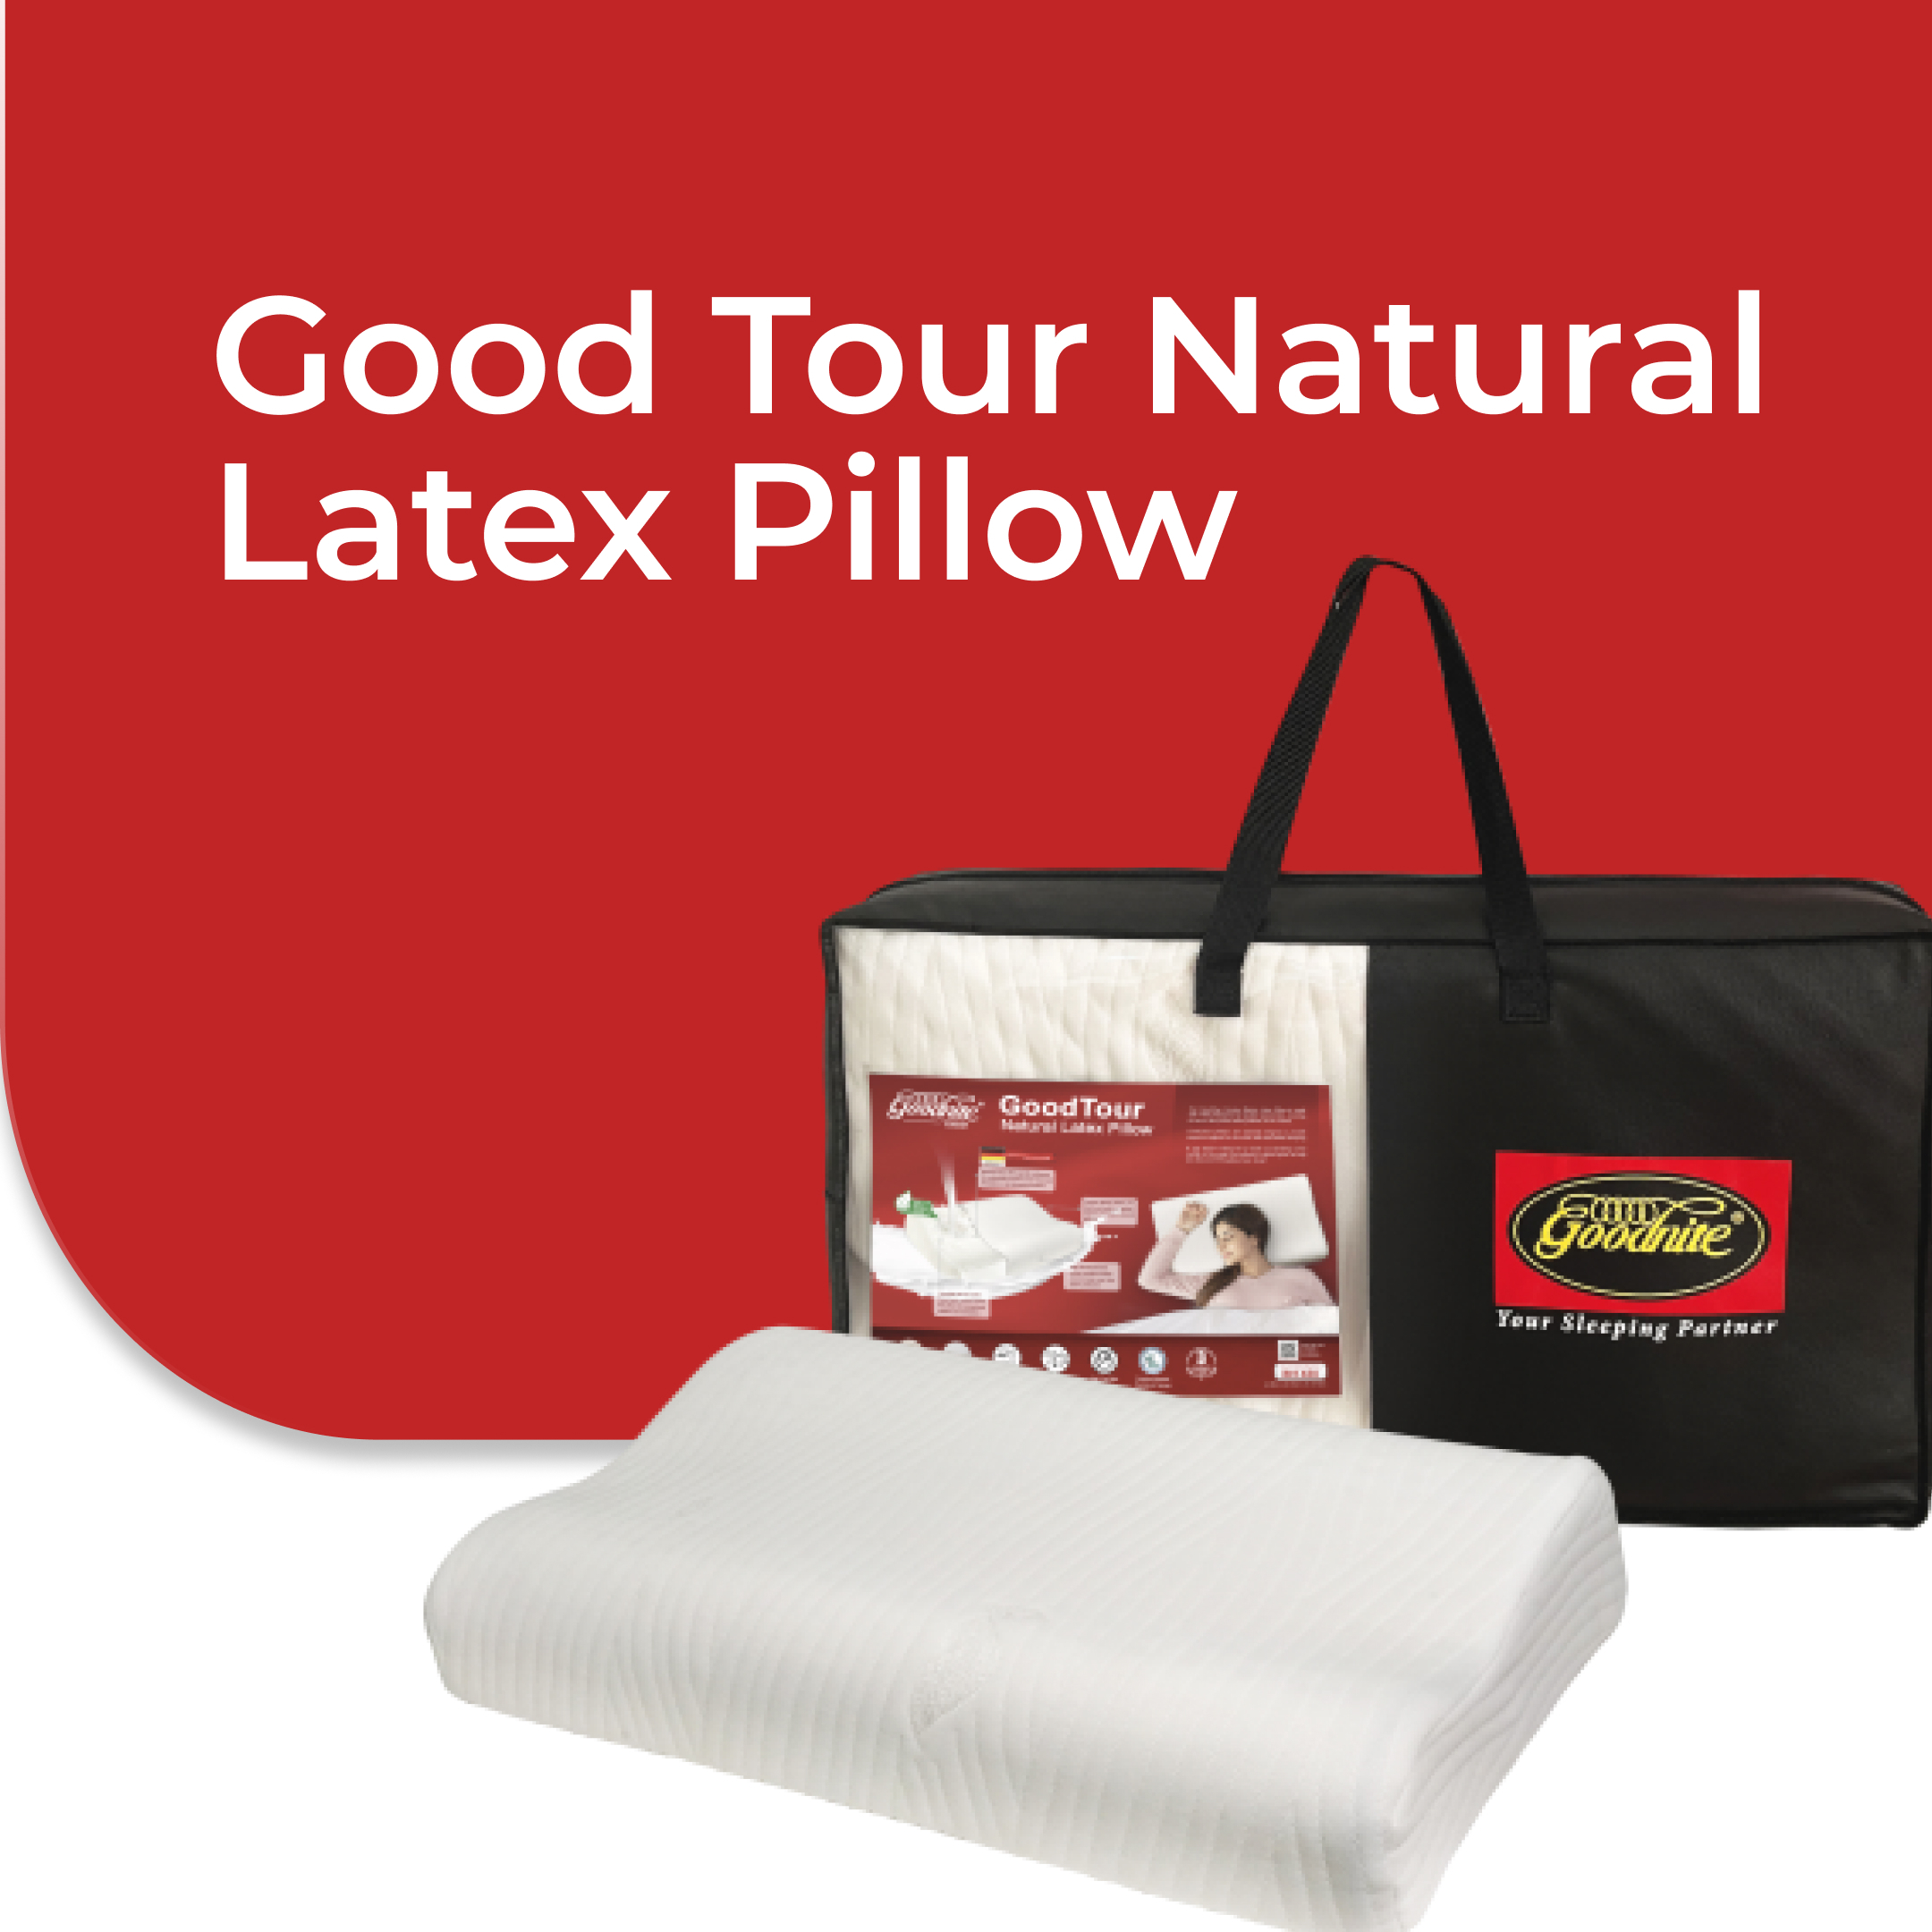 Good Tour Natural Latex Pillow5.jpg